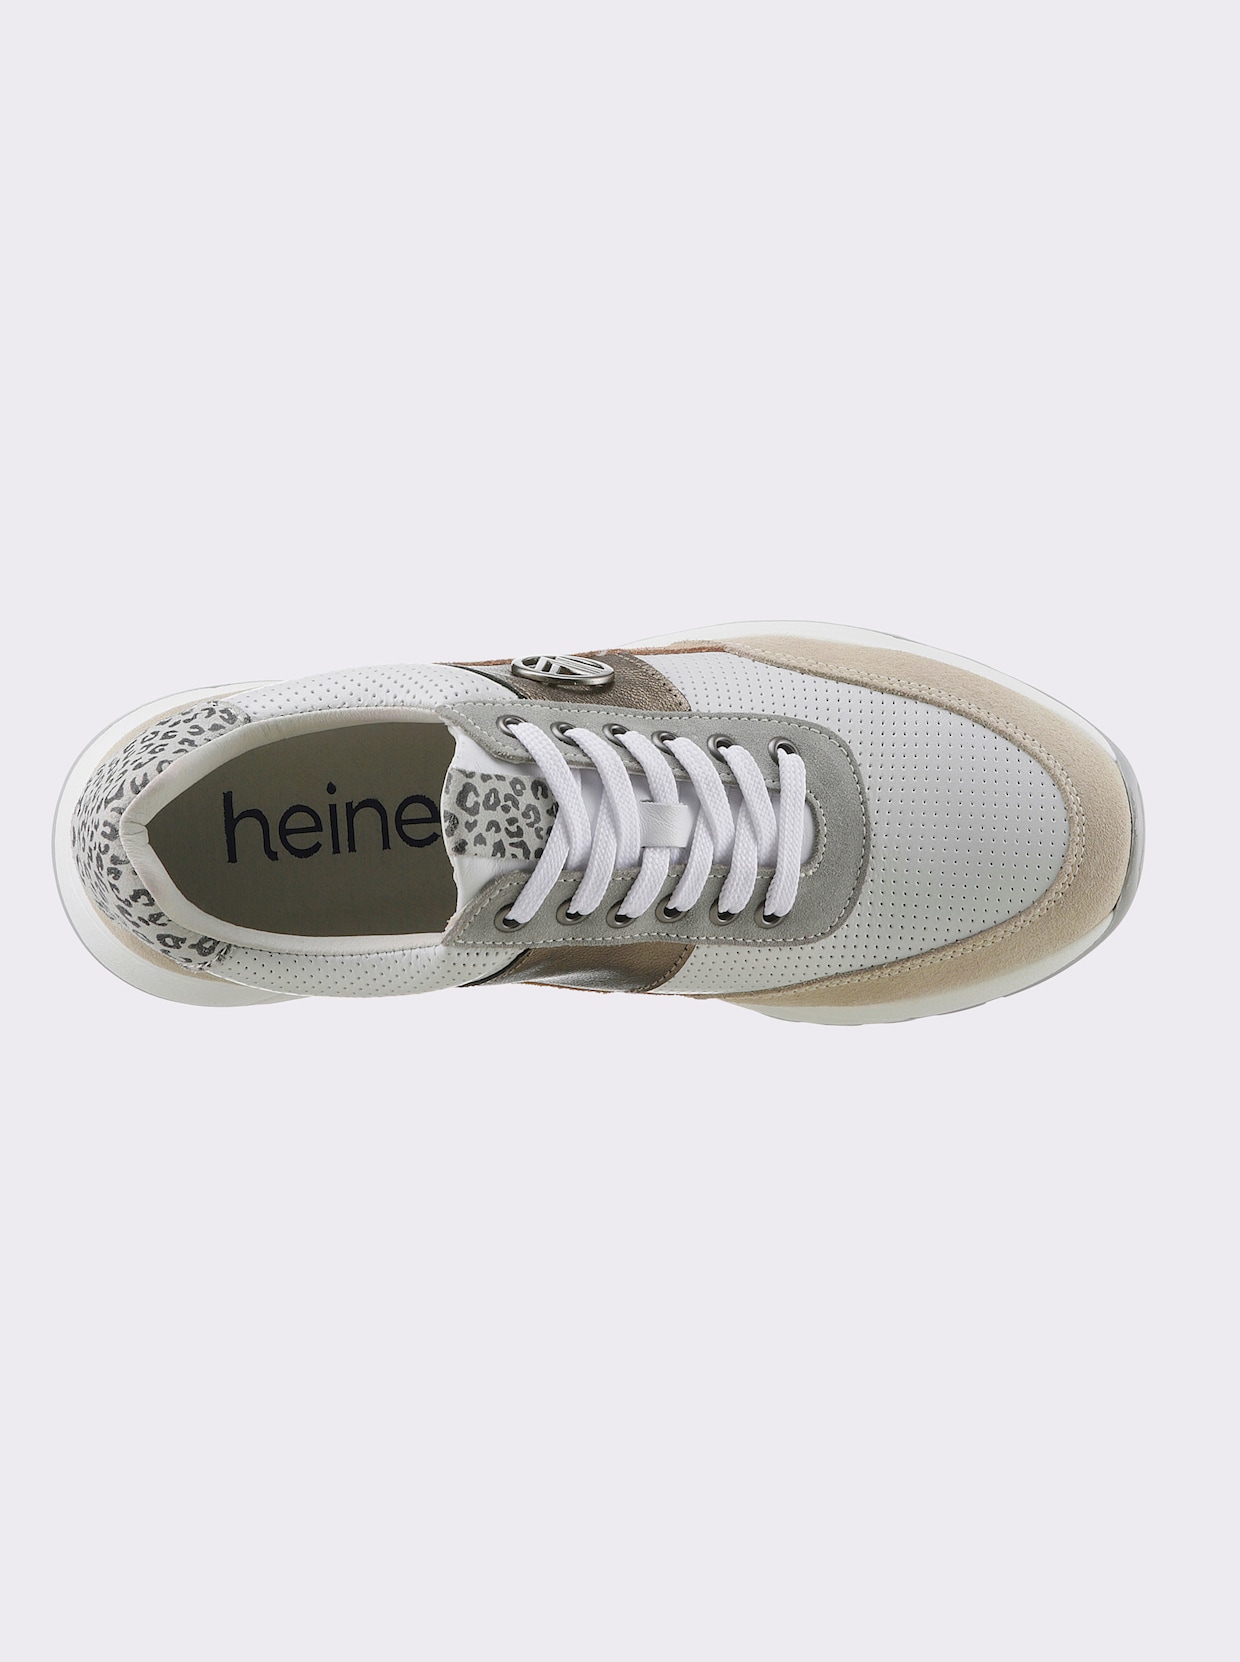 heine Sneaker - weiß-taupe